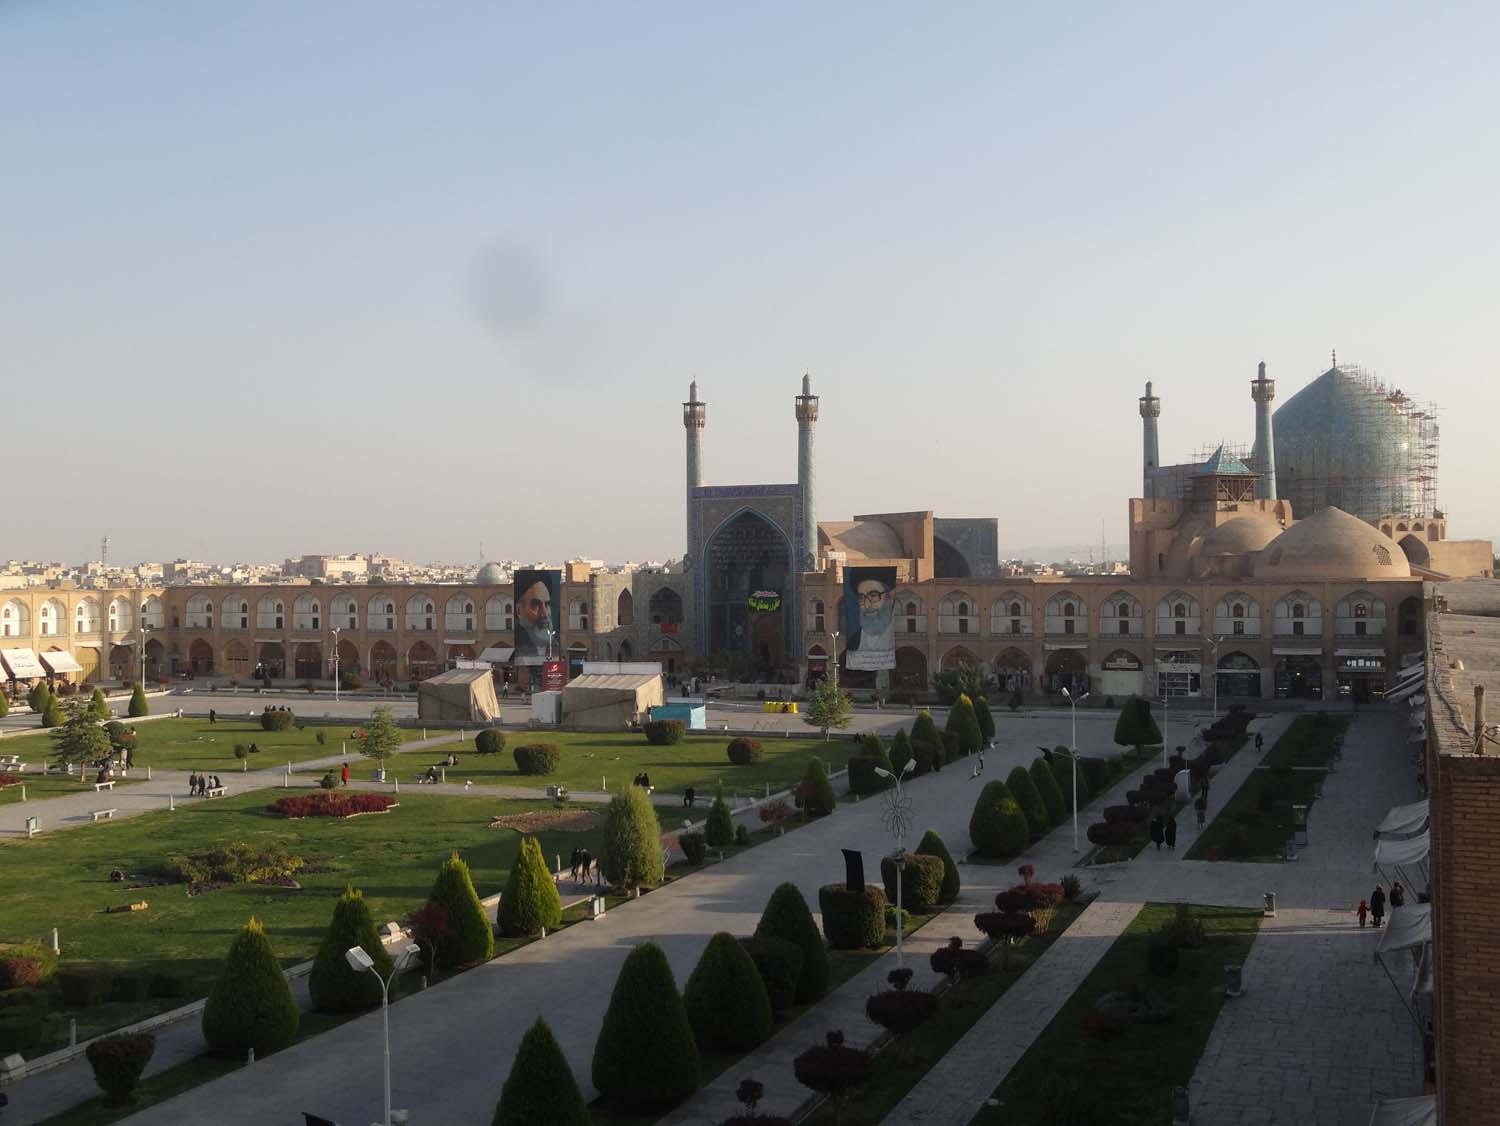 Imam Square - 160 meters wide by 508 meters long!